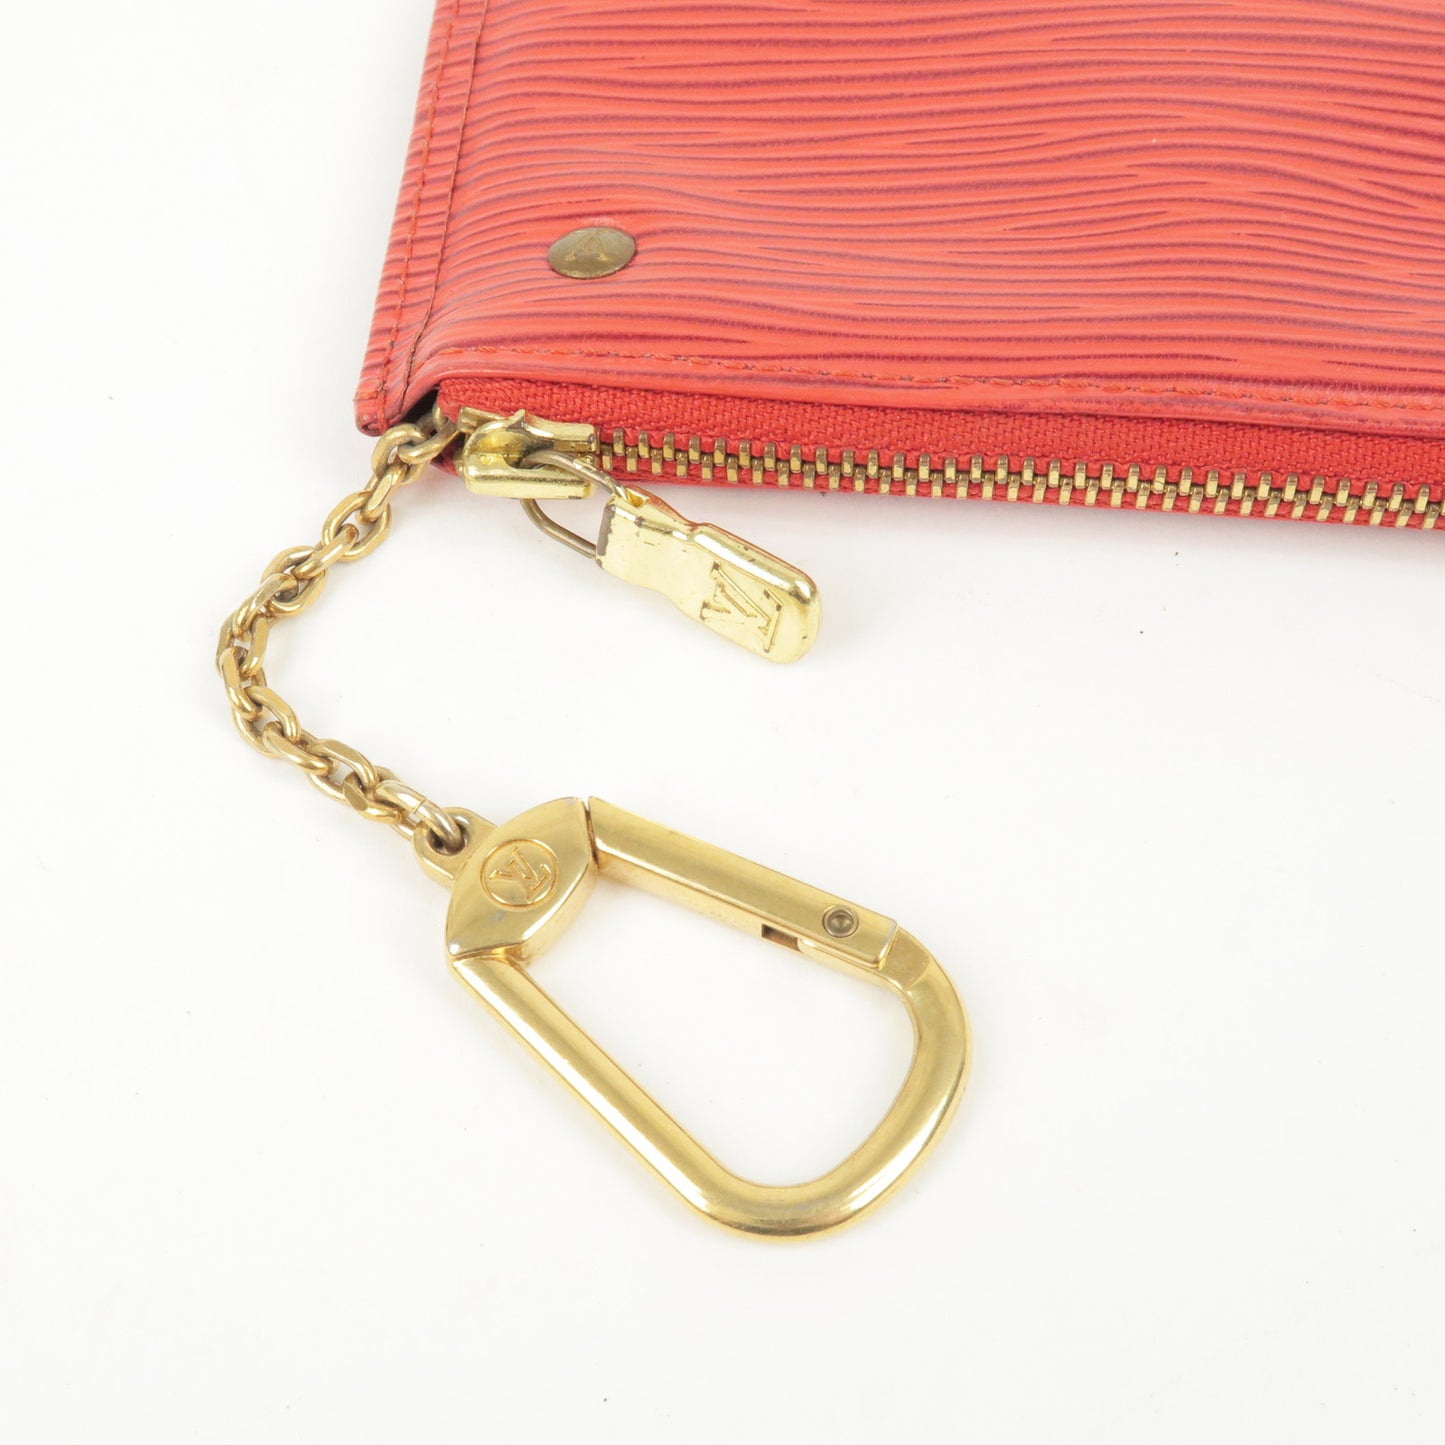 Louis Vuitton Epi Pochette Cles Coin Case M63807 Castillian Red